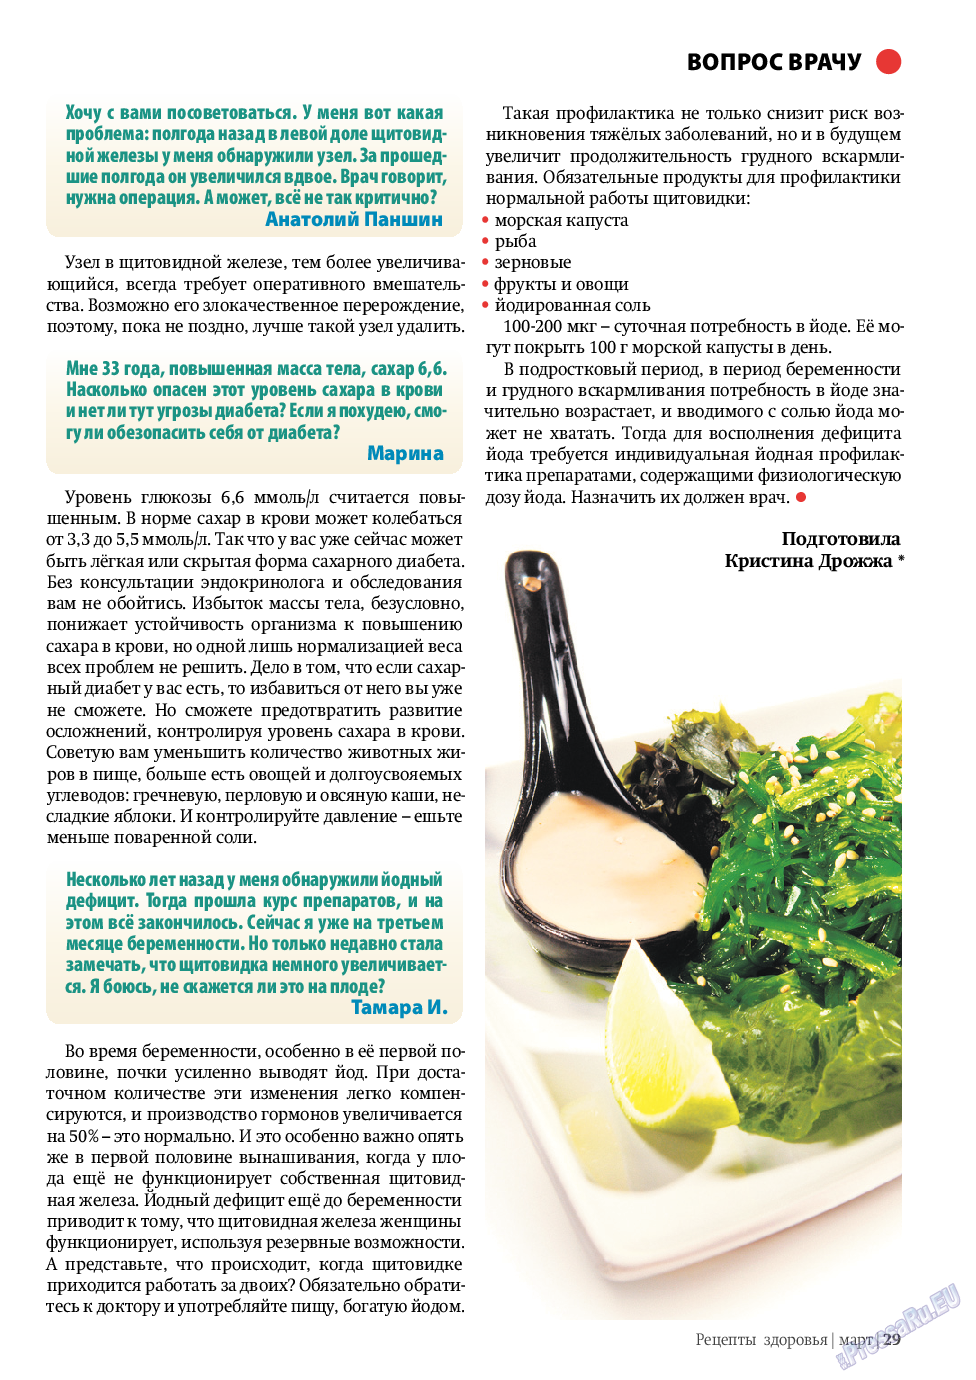 Рецепты здоровья, журнал. 2010 №3 стр.29